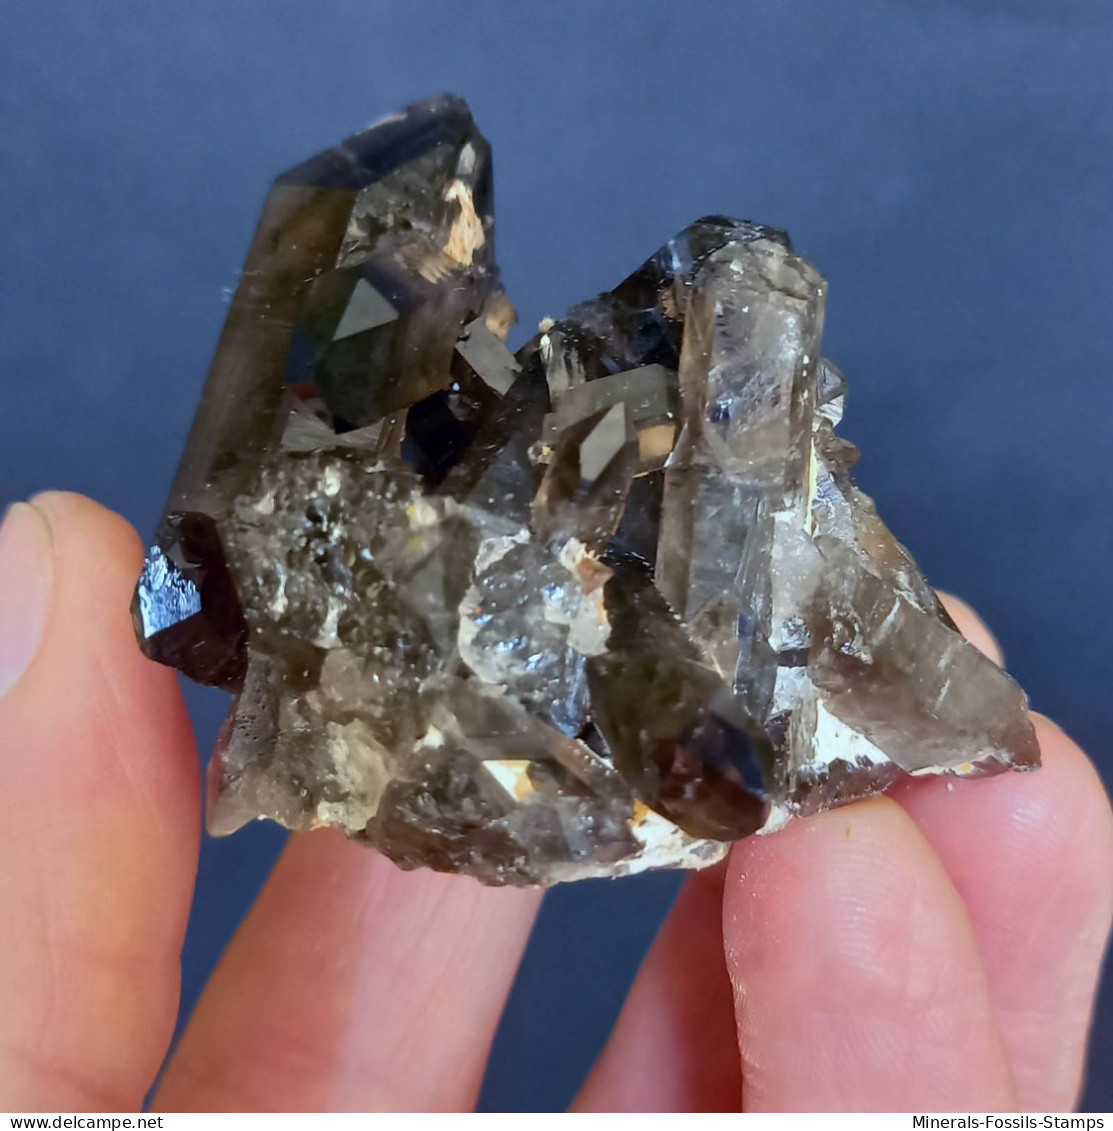 #05 – SCHÖNE MORIONE QUARZ Kristalle (Kara-Oba, Moiynkum, Jambyl, Kasachstan) - Minerals